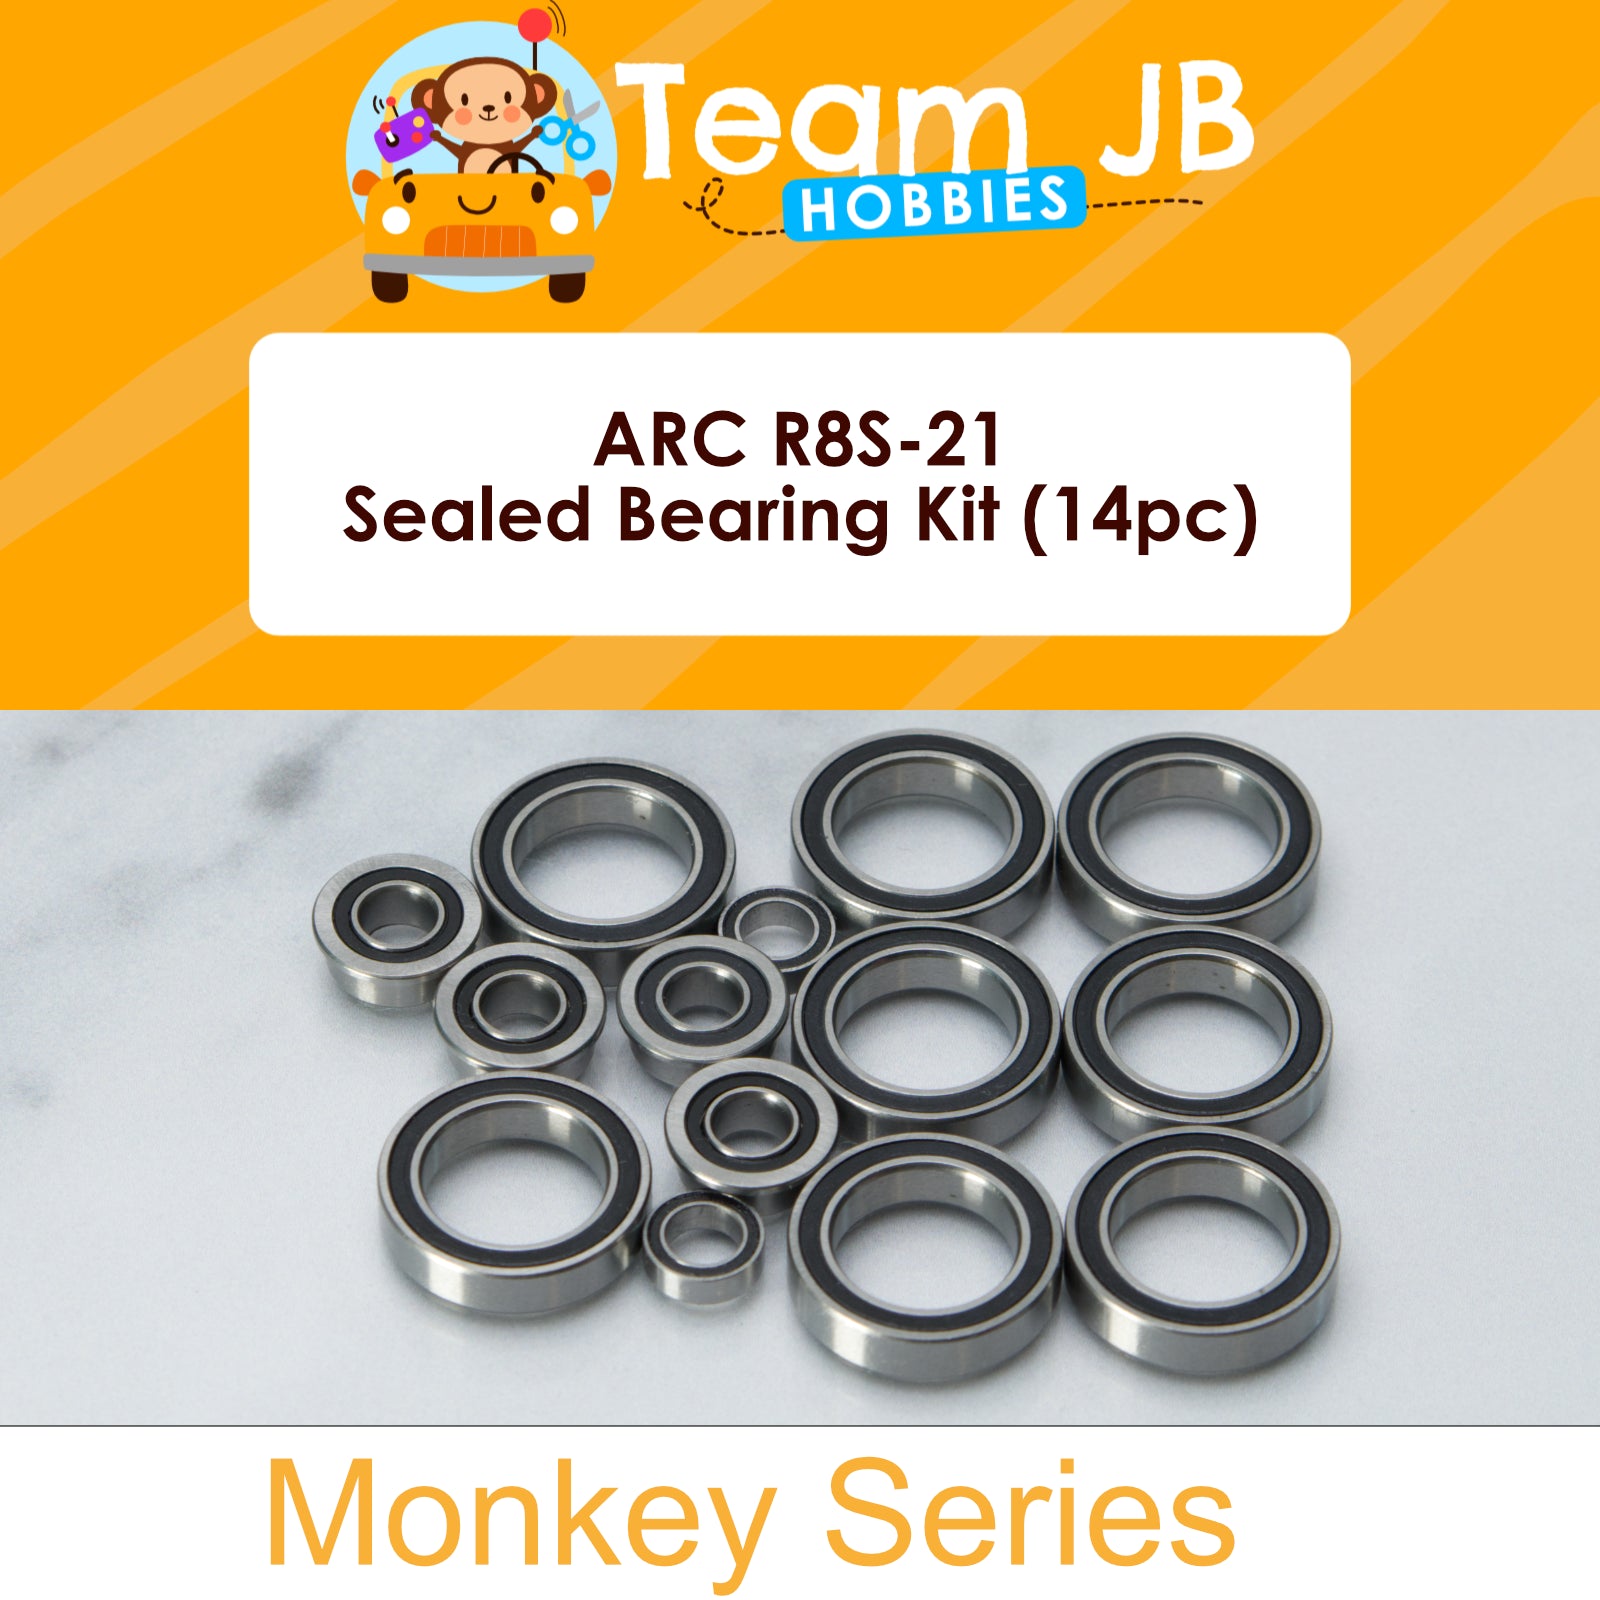 ARC R8S-21 - Sealed Bearing Kit